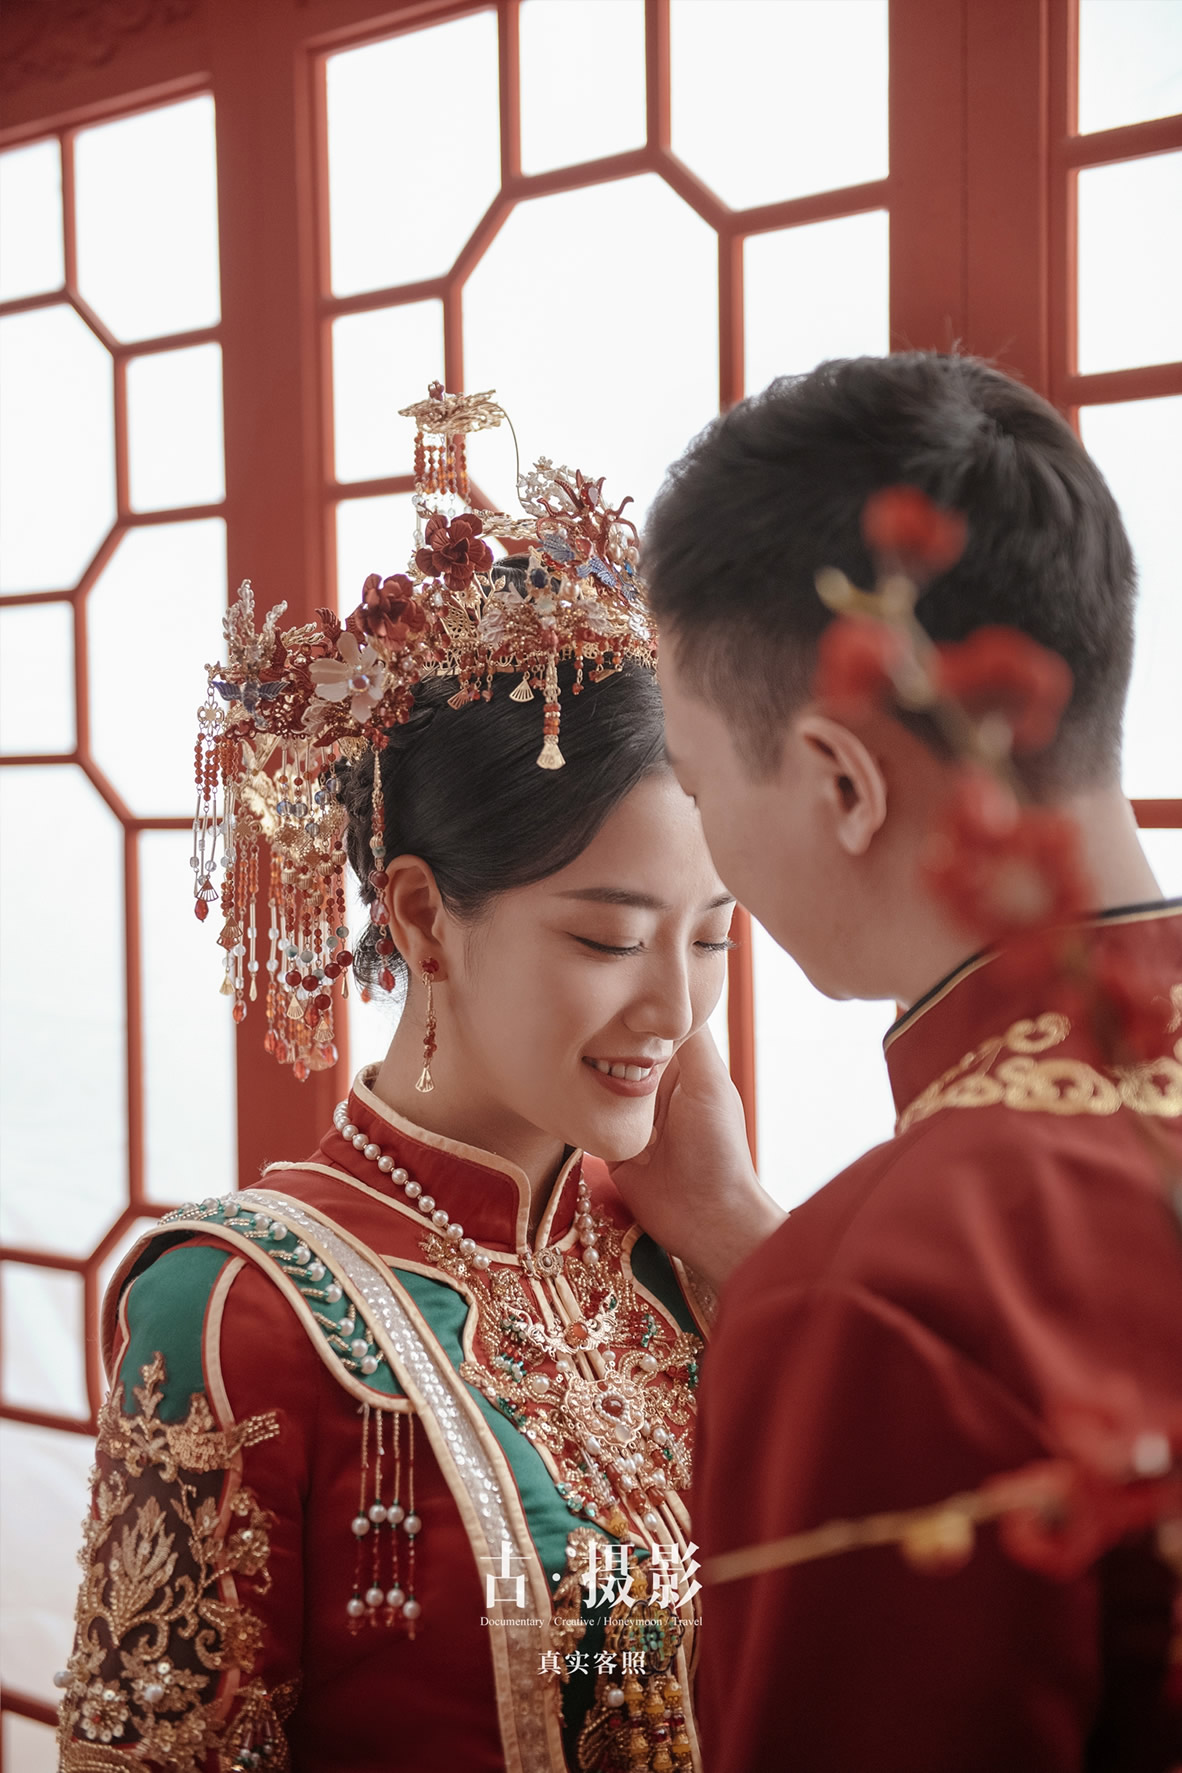 梁先生 连小姐 - 每日客照 - 广州婚纱摄影-广州古摄影官网